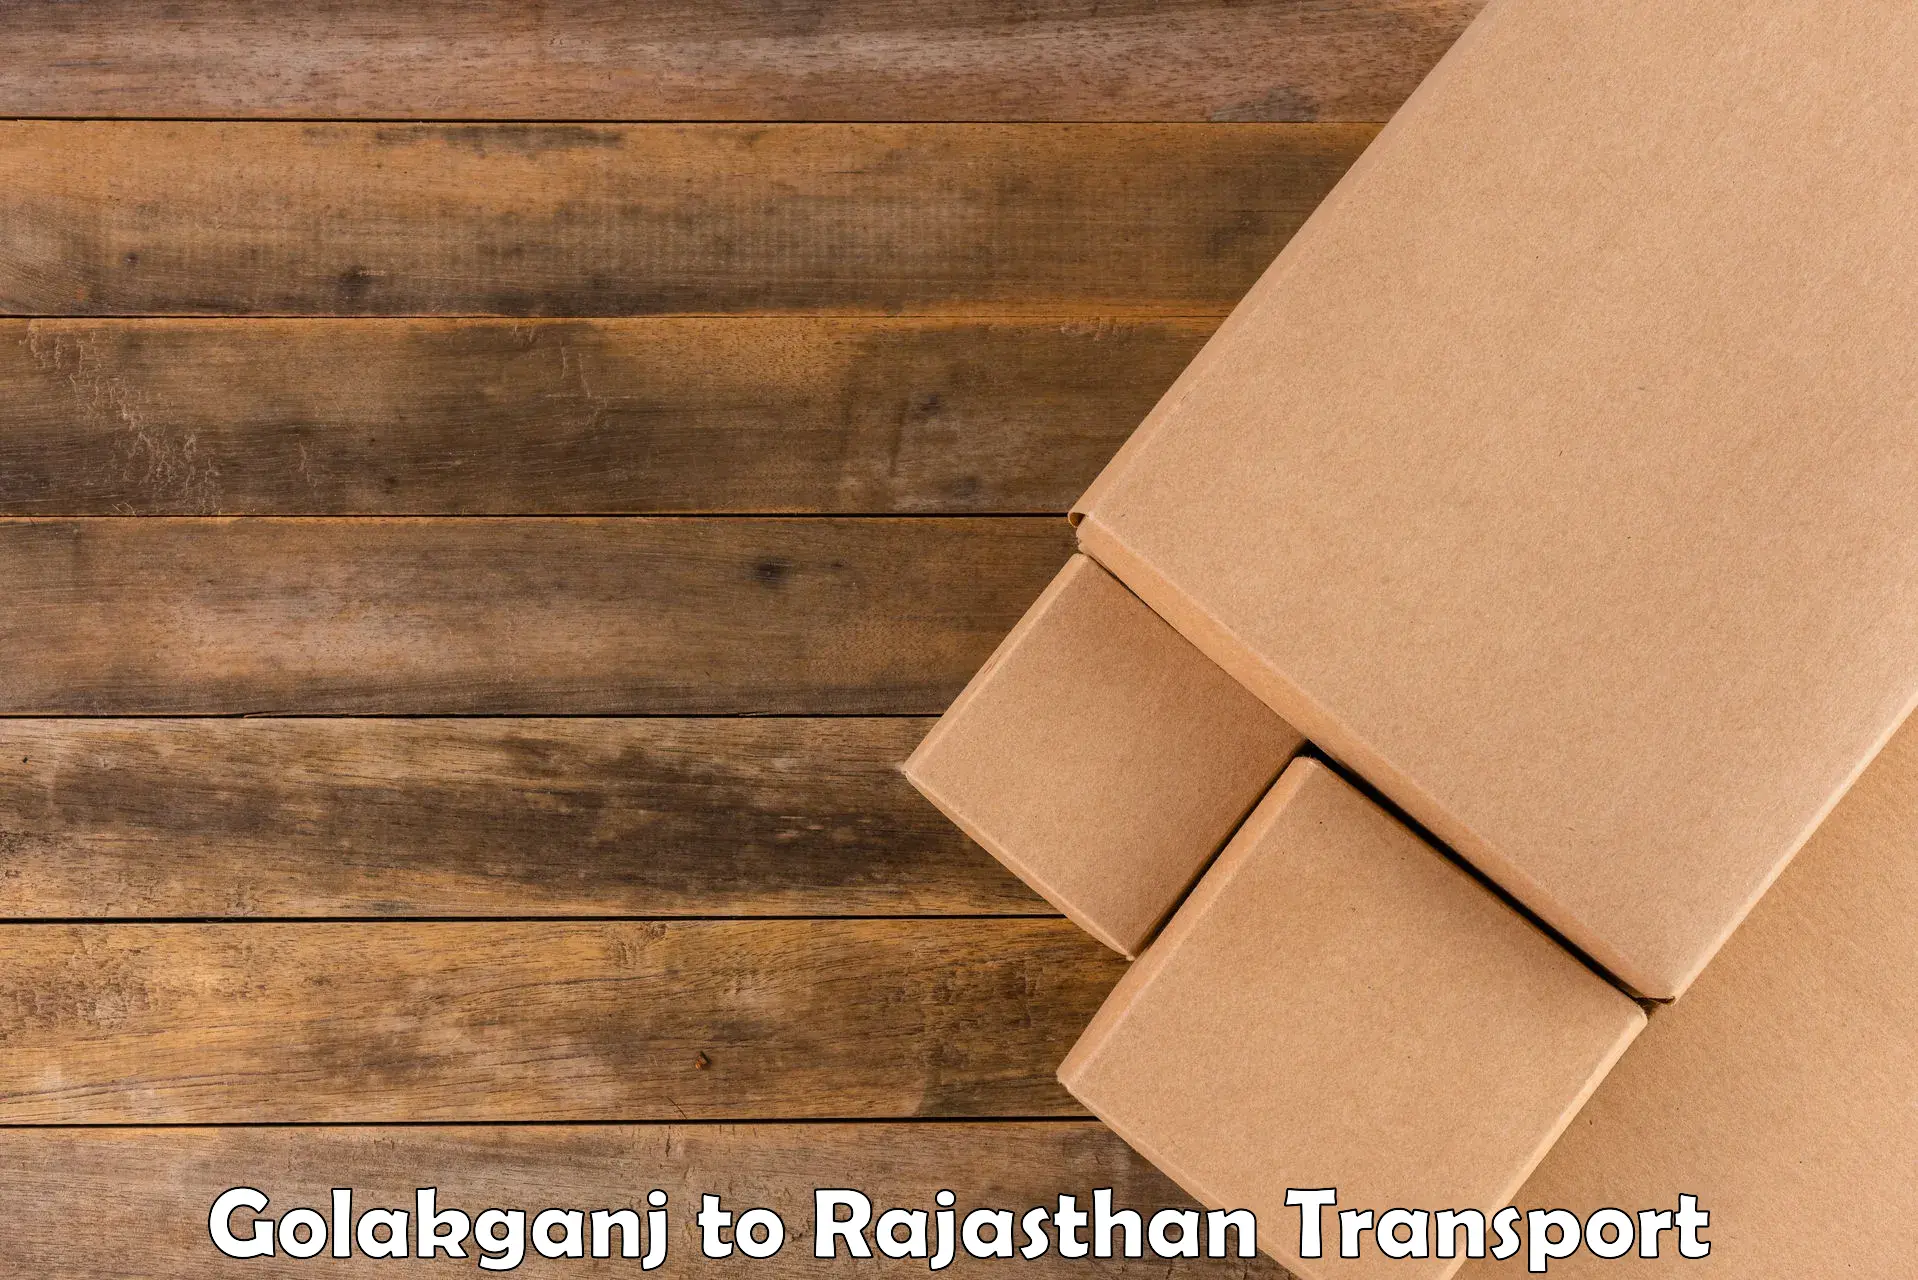 Shipping partner Golakganj to Khanpur